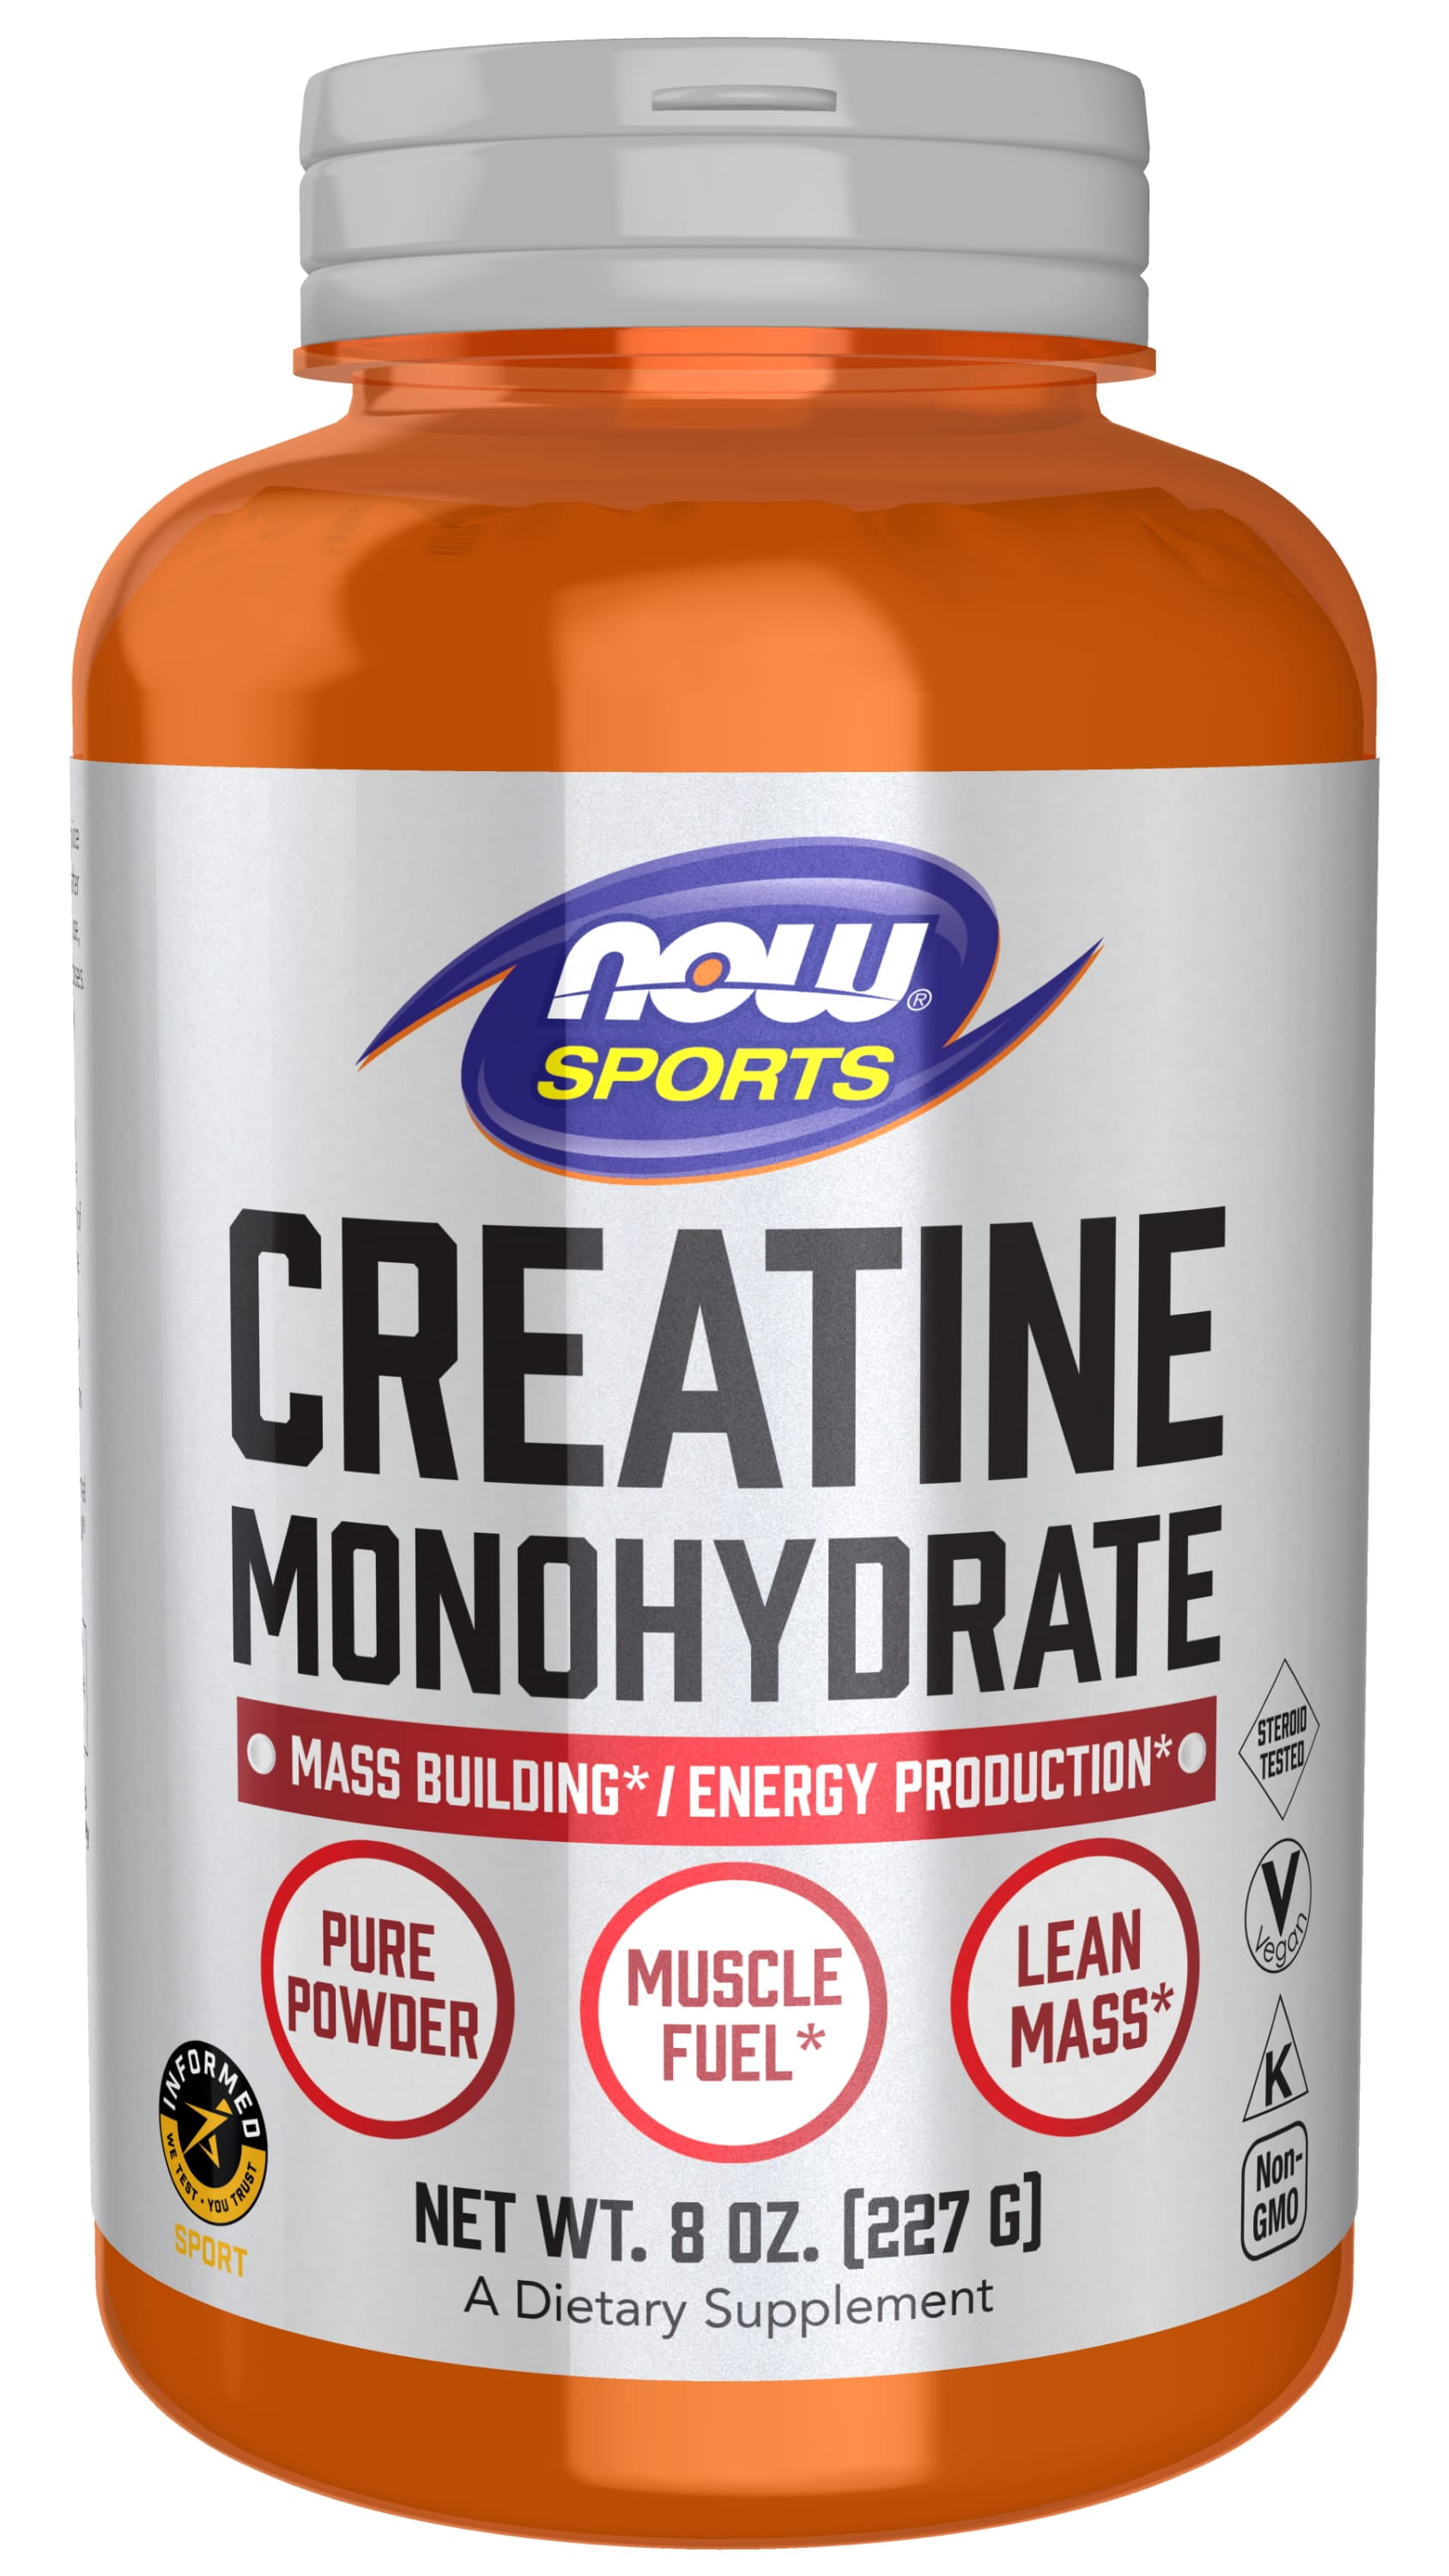 Cutler Nutrition Jay Essentials Pure Creatine Monohydrate Powder